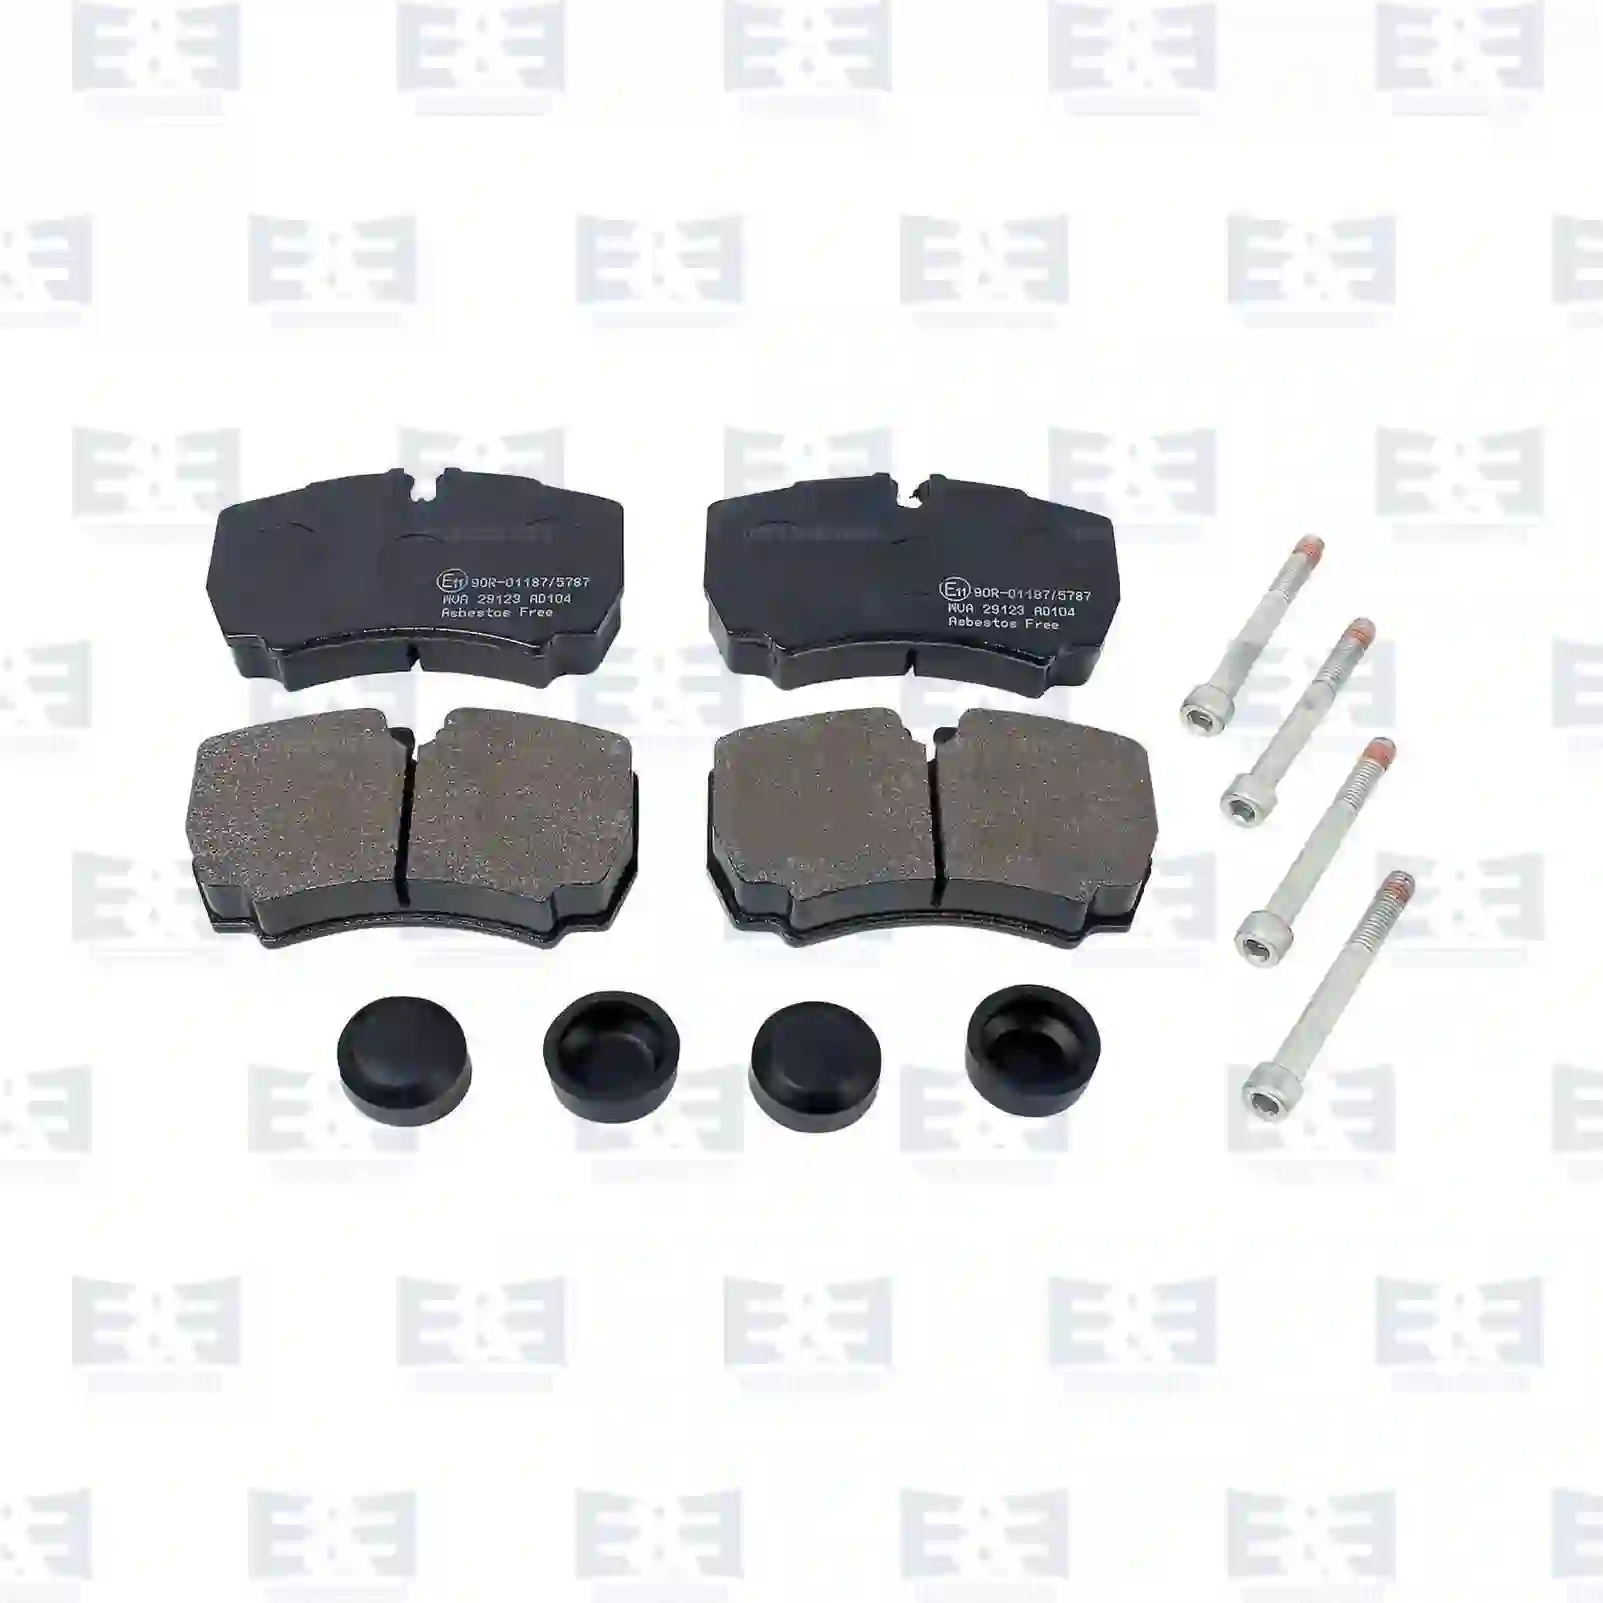 Disc brake pad kit, with screws, 2E2297448, 1501265, 1718023, 8C1V-2M008-AA, 8C1V-2M008-AB, 02991667, 42470841, 42555406, 42560080, 42561101, 42561102, 42567447, 42576680, ZG50436-0008 ||  2E2297448 E&E Truck Spare Parts | Truck Spare Parts, Auotomotive Spare Parts Disc brake pad kit, with screws, 2E2297448, 1501265, 1718023, 8C1V-2M008-AA, 8C1V-2M008-AB, 02991667, 42470841, 42555406, 42560080, 42561101, 42561102, 42567447, 42576680, ZG50436-0008 ||  2E2297448 E&E Truck Spare Parts | Truck Spare Parts, Auotomotive Spare Parts